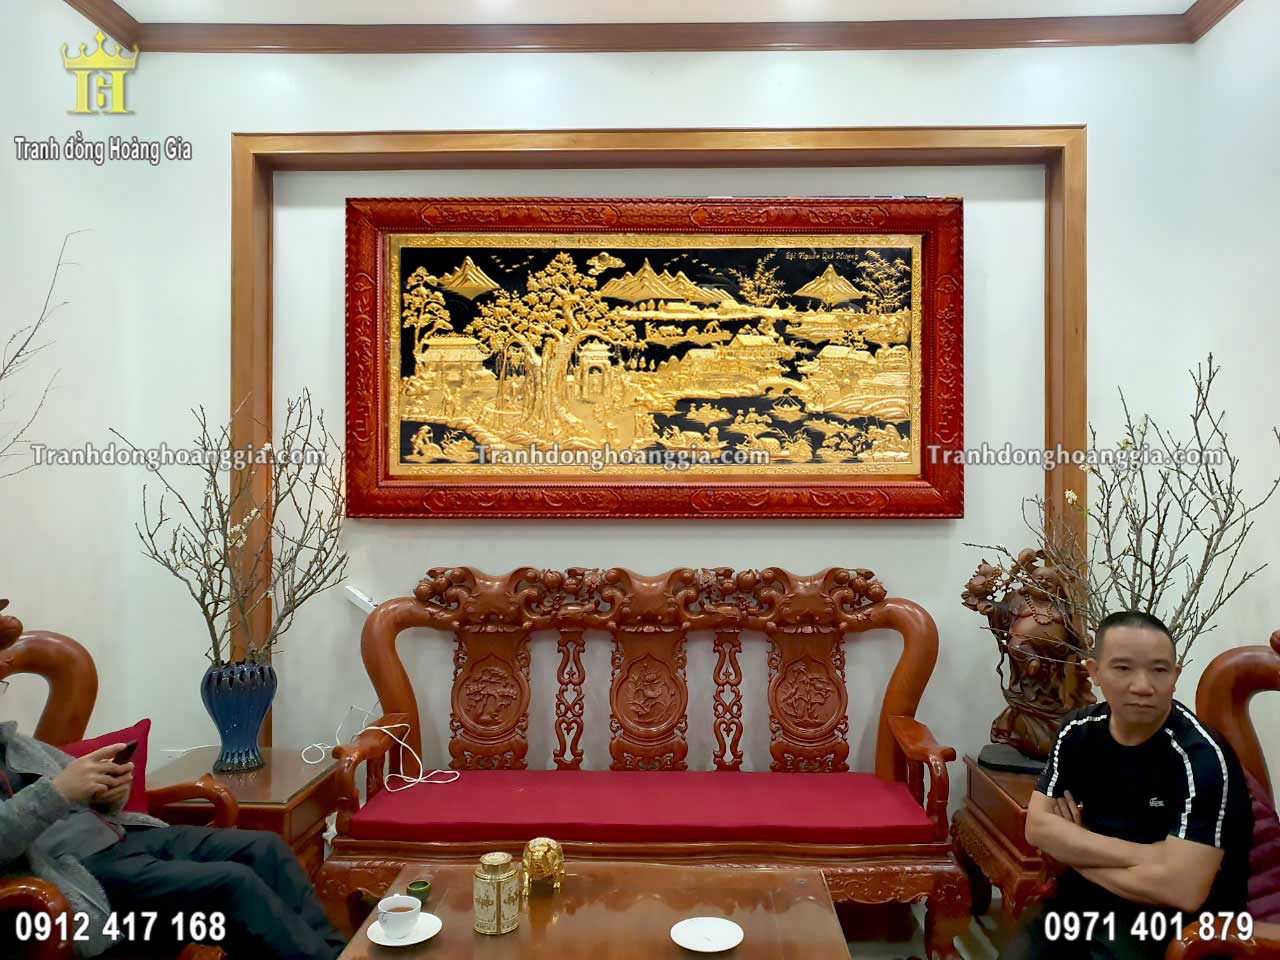 Bức tranh đồng quê bằng đồng mạ vàng 24K là sự lựa chọn hoàn hảo cho không gian phòng khách